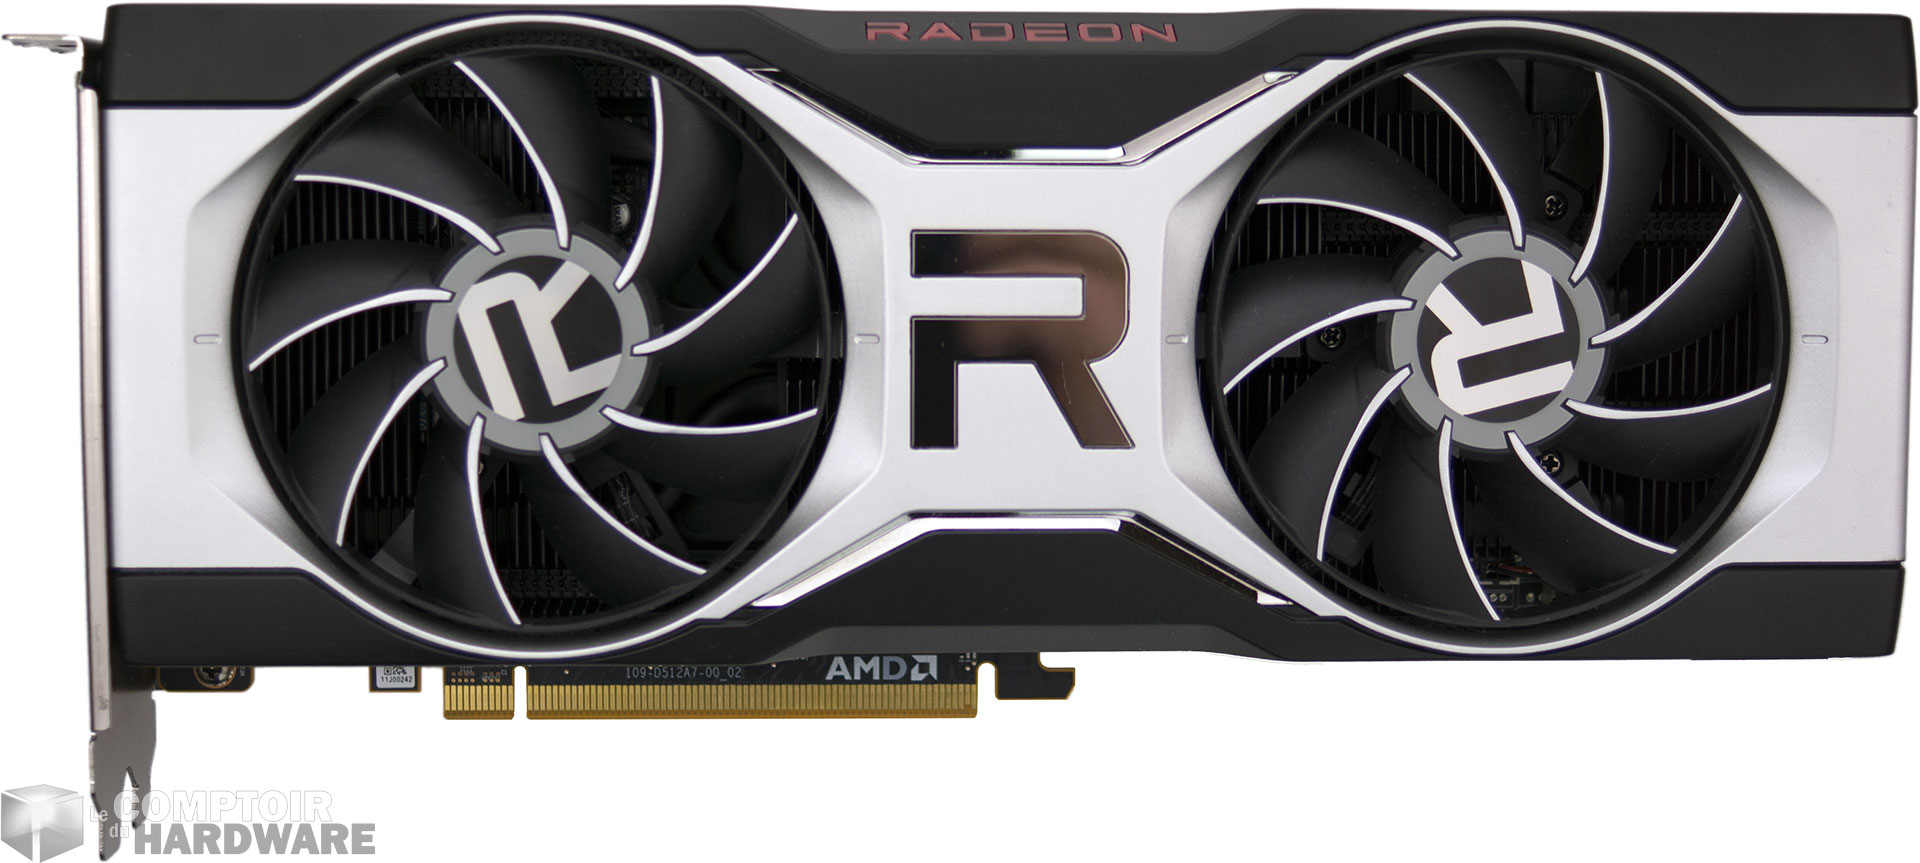 Radeon RX 6700 XT : face avant